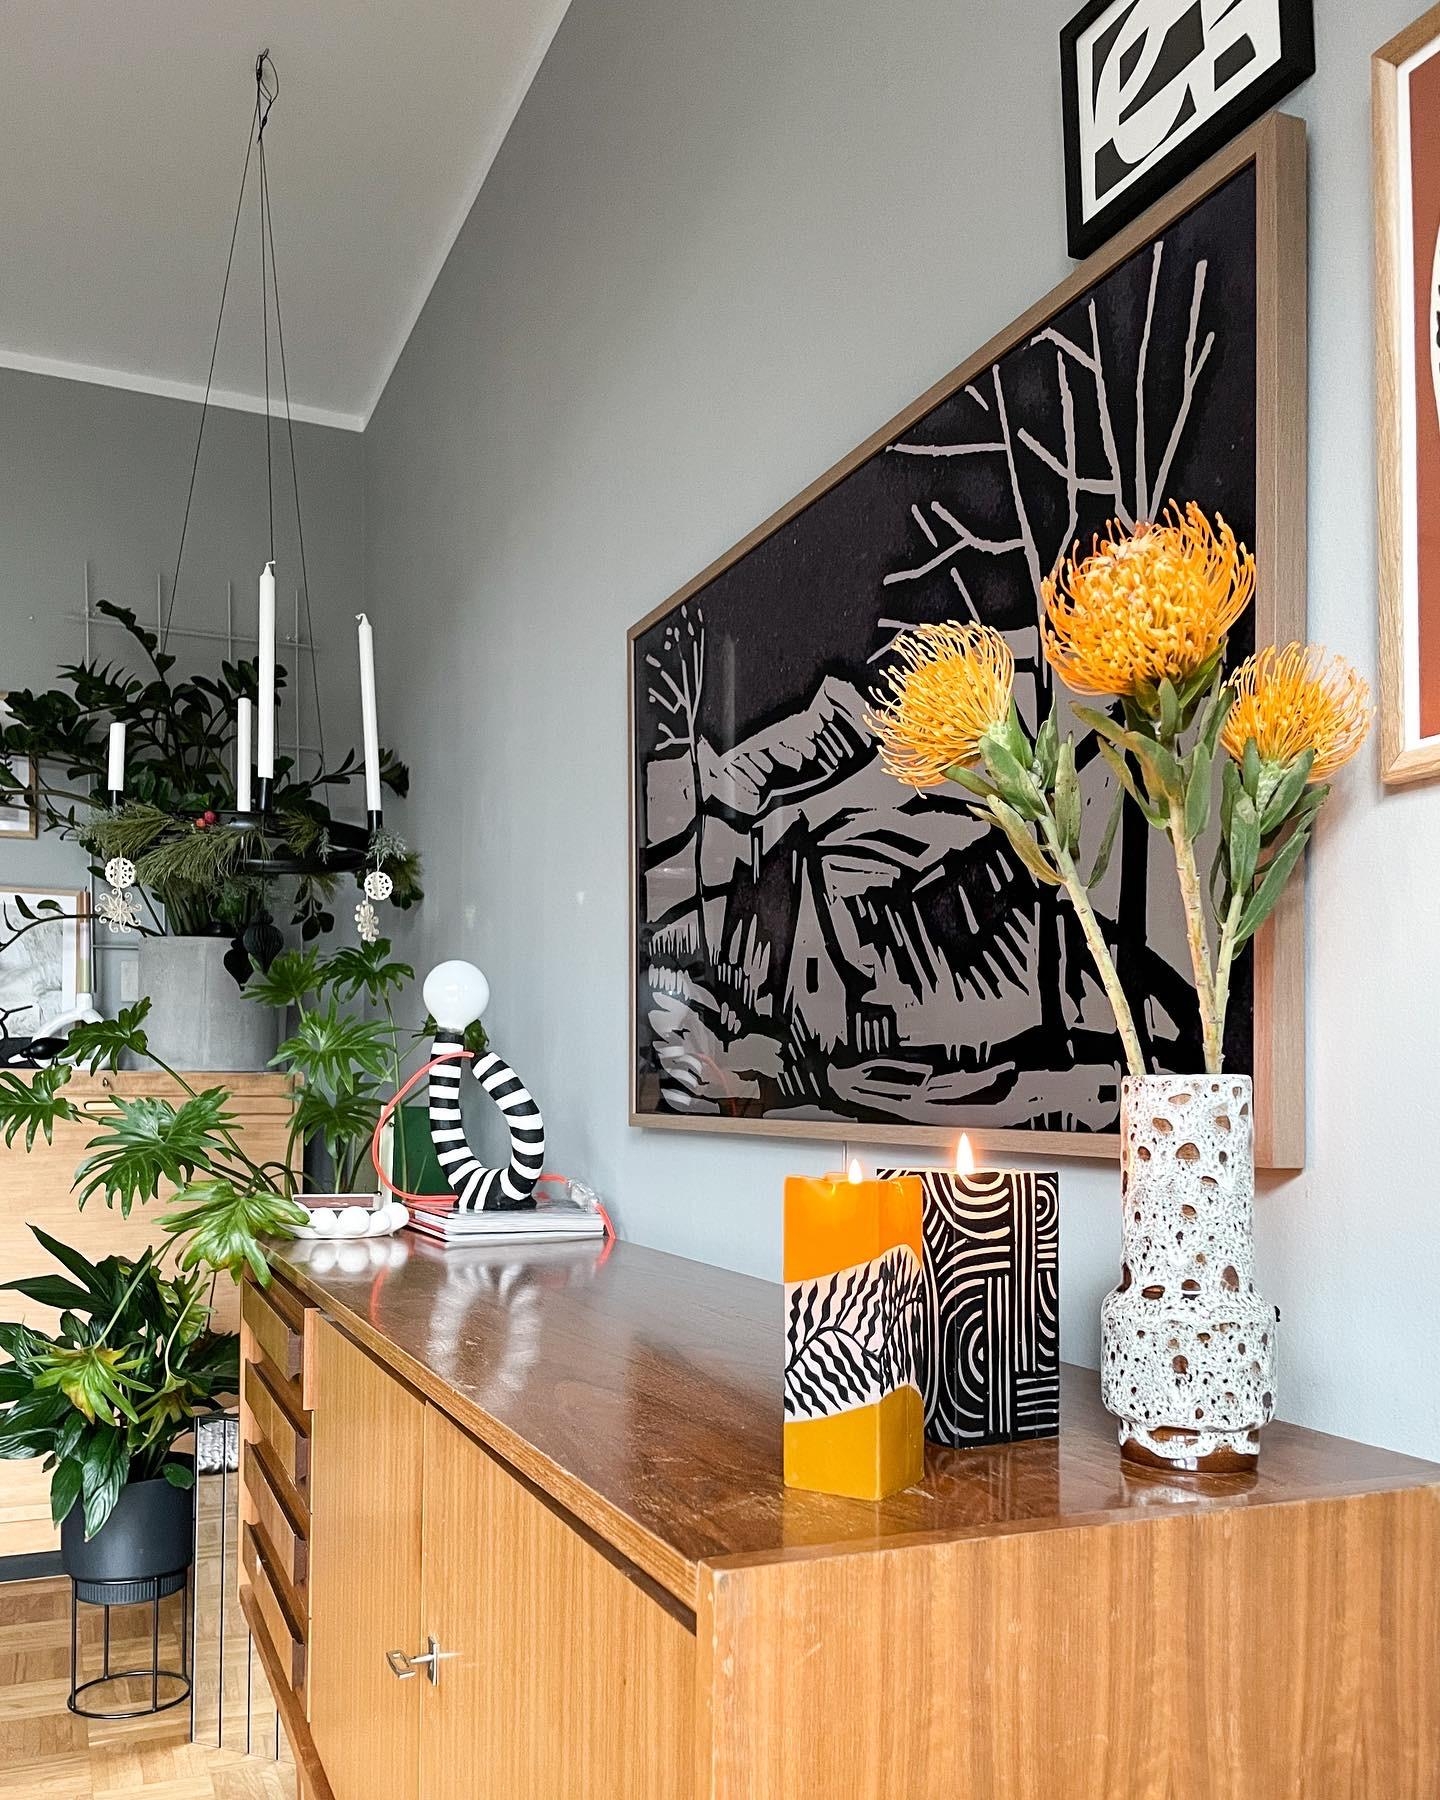 Gegen das Grau ...

#Sideboard #Wohnzimmer #Vintage #Prothea #orange #Pflanzen #Vasenmittwoch #Vasenliebe